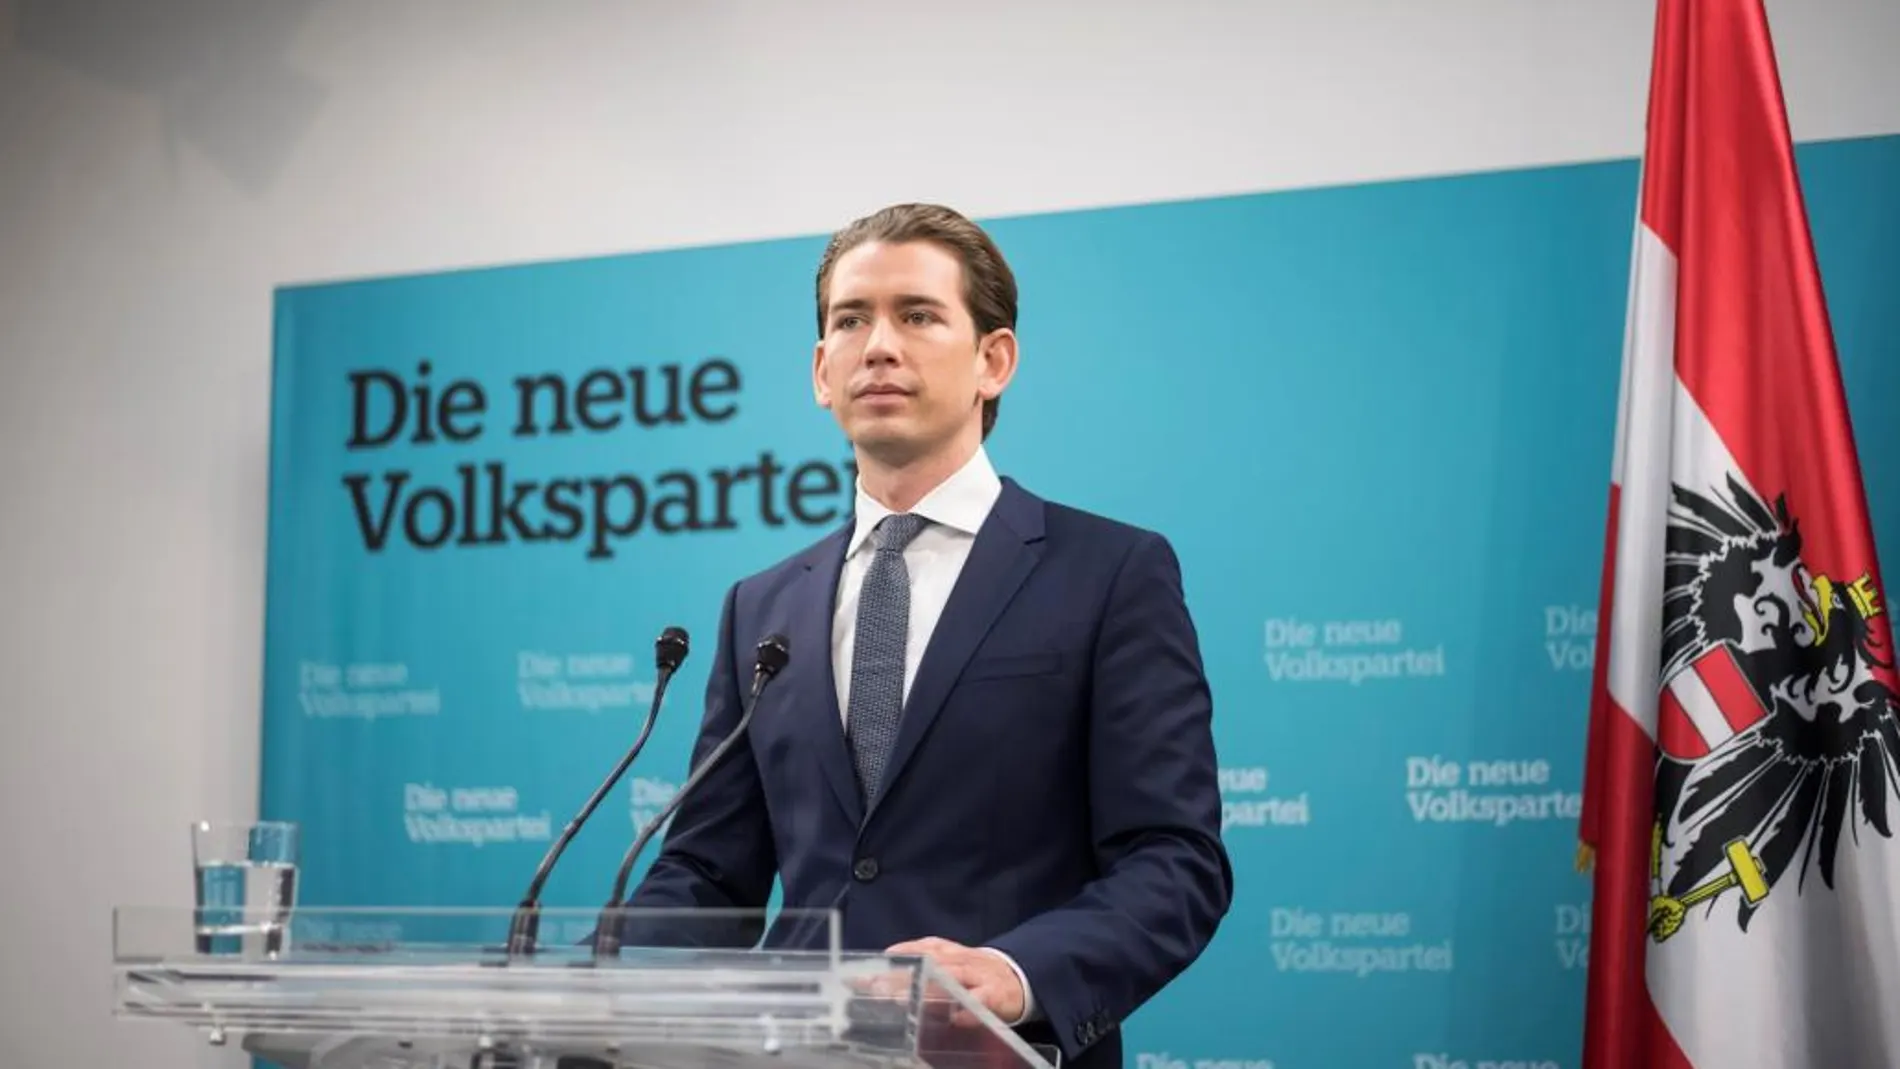 El líder del Partido Popular austríaco, Sebastian Kurz, de 31 años y ganador de las elecciones legislativas de Austria el pasado día 15, ofrece una rueda de prensa en la sede de su partido en Viena (Austria) hoy